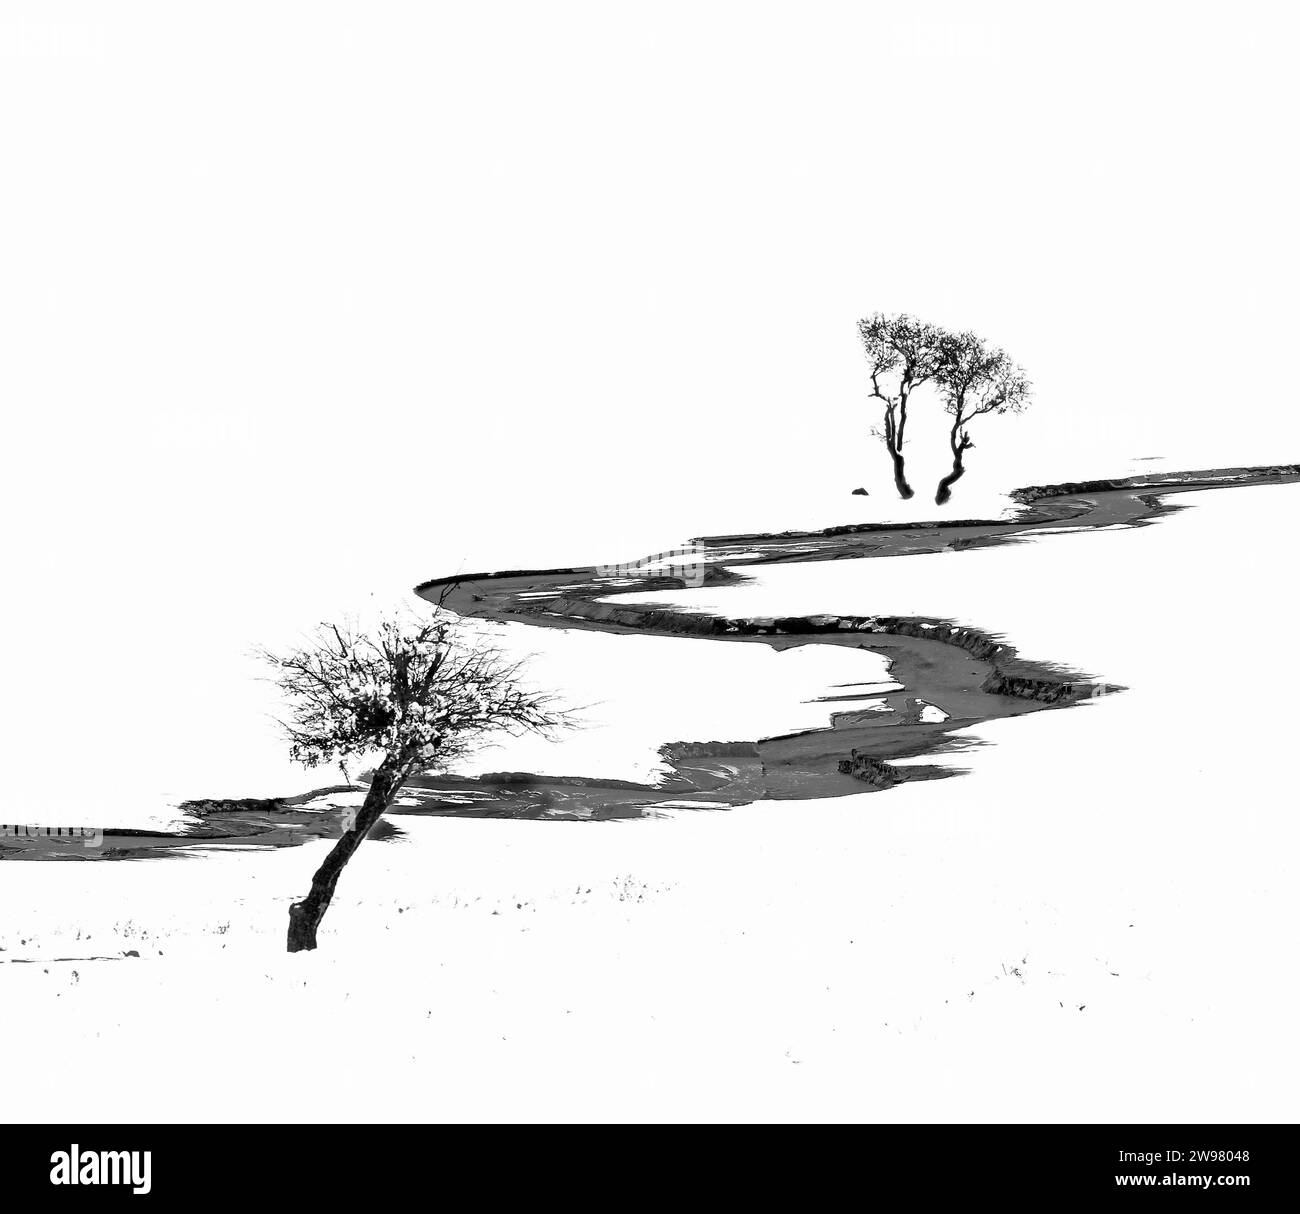 Photographie artistique en noir et blanc représentant deux arbres debout sur une colline recouverte de neige Banque D'Images